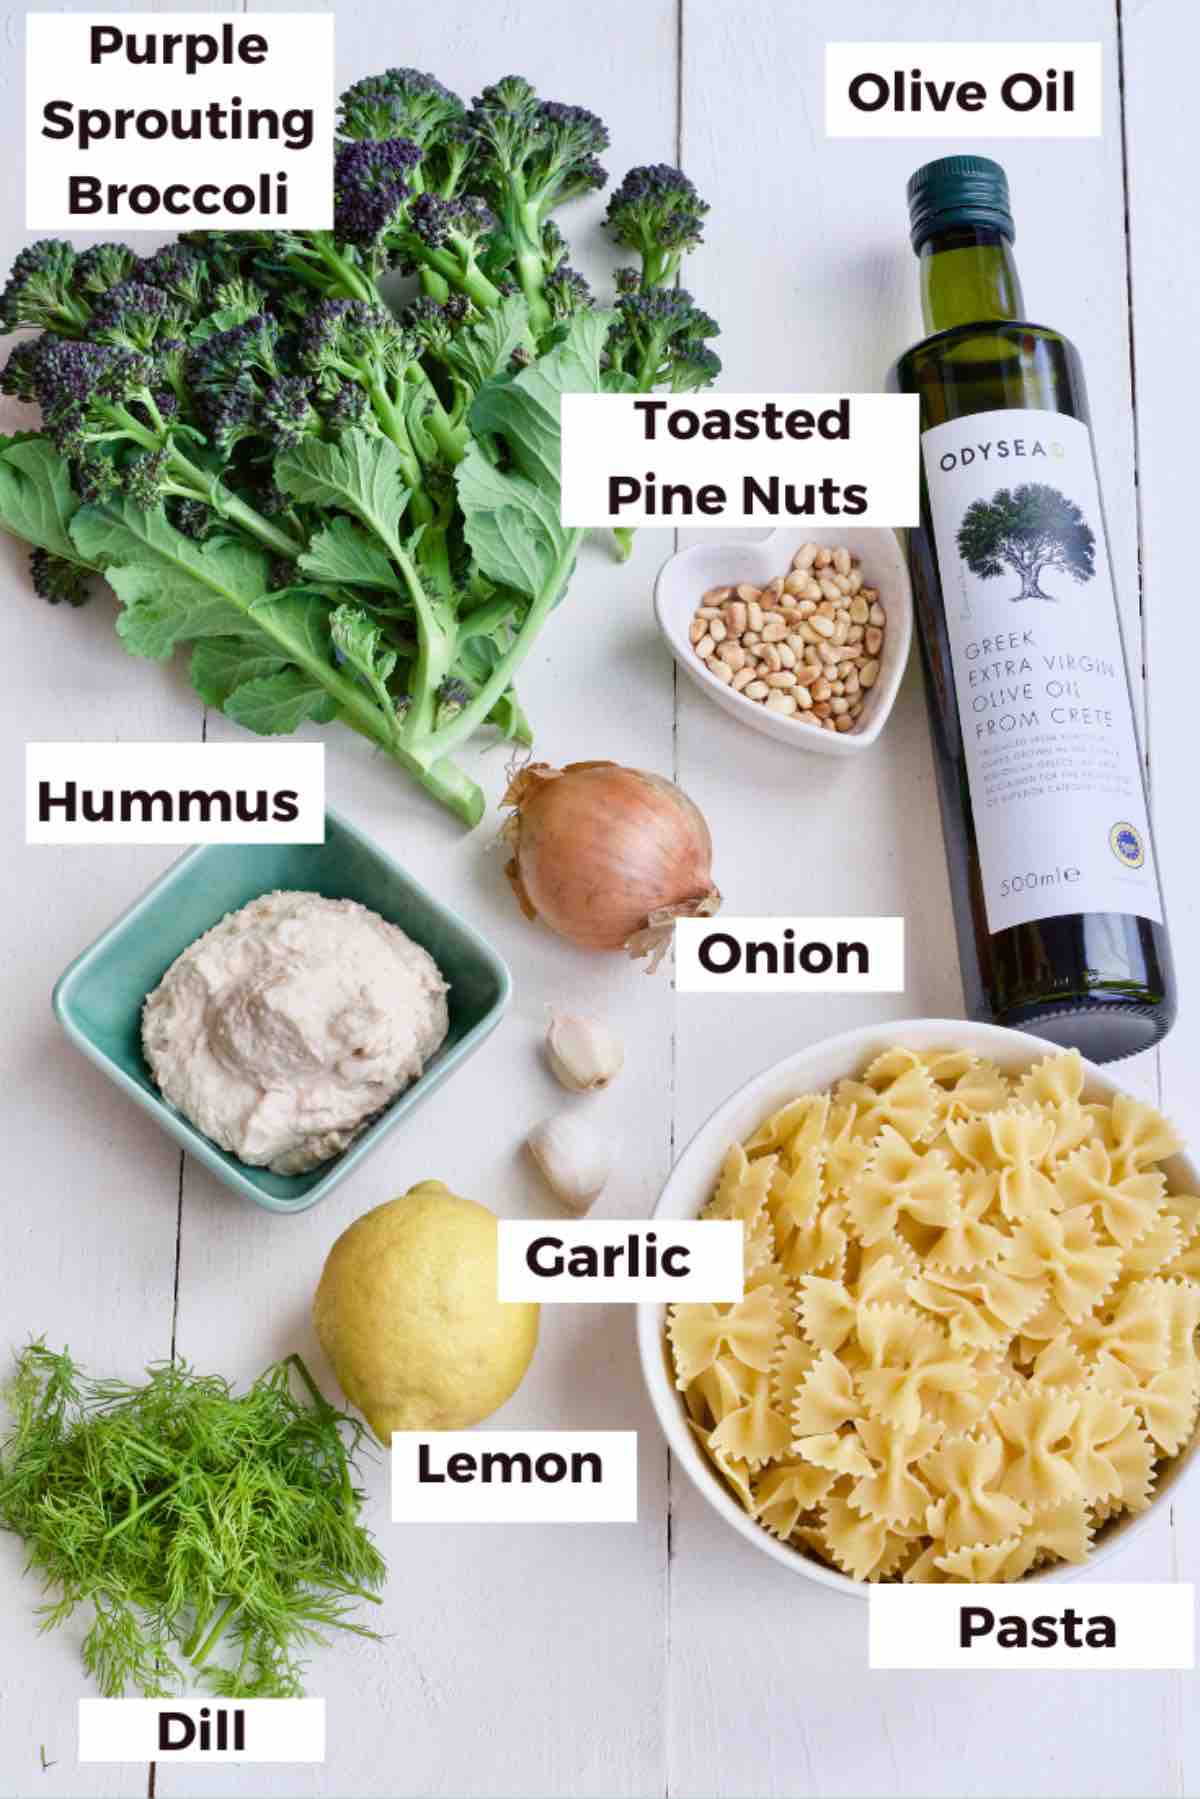 Ingredients for making hummus pasta.